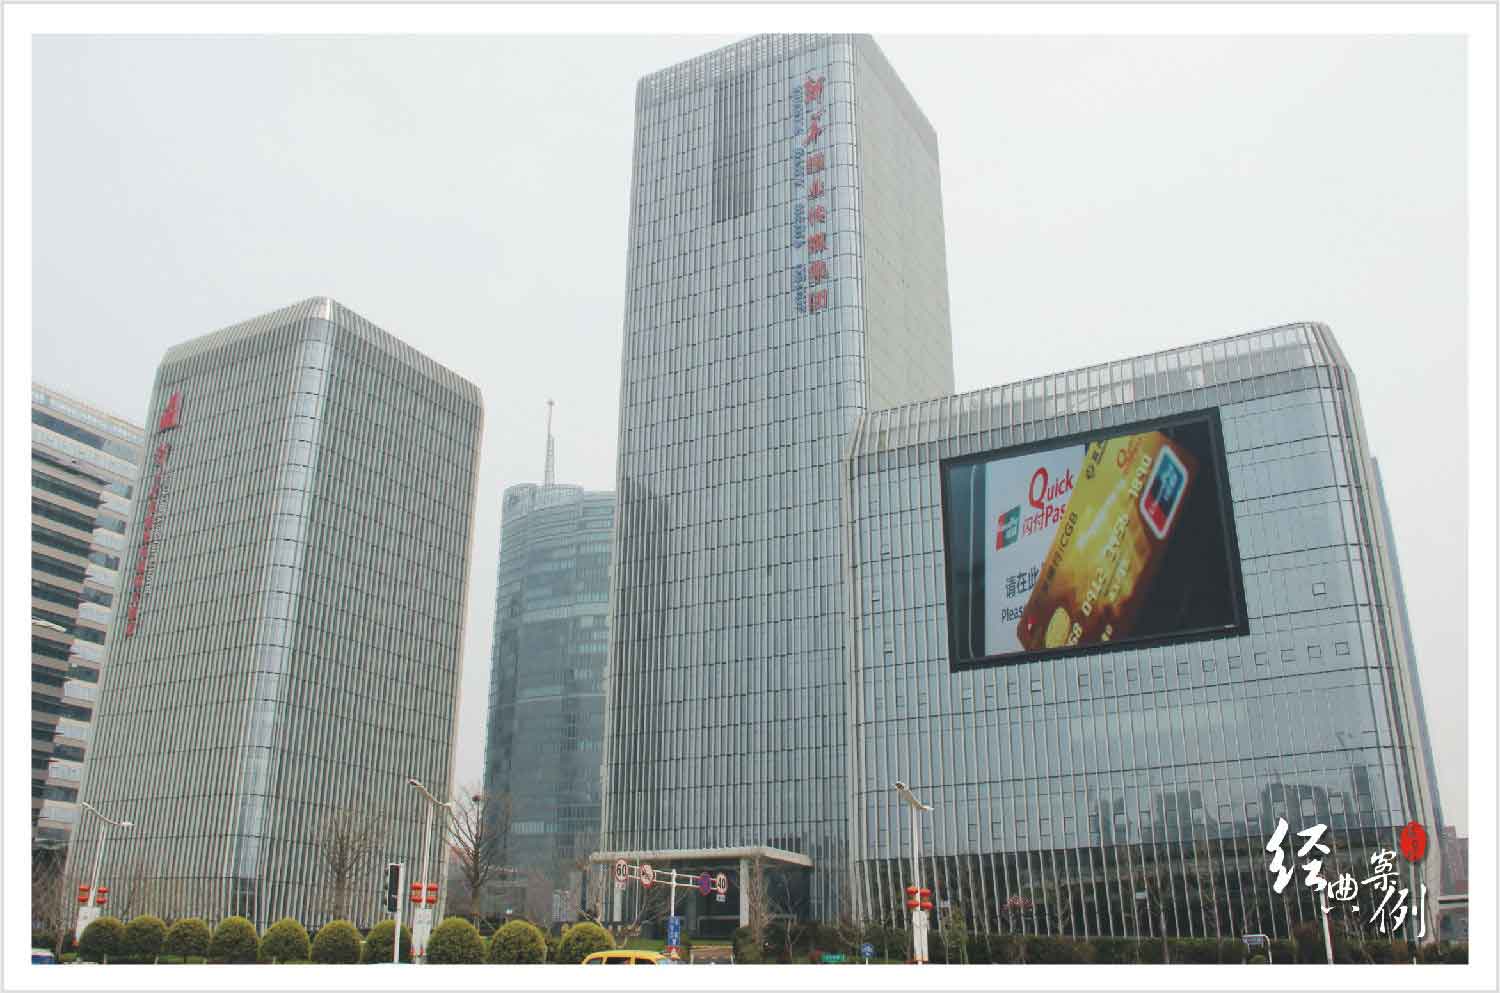 南京新華日報河西新聞中心門禁管理系統